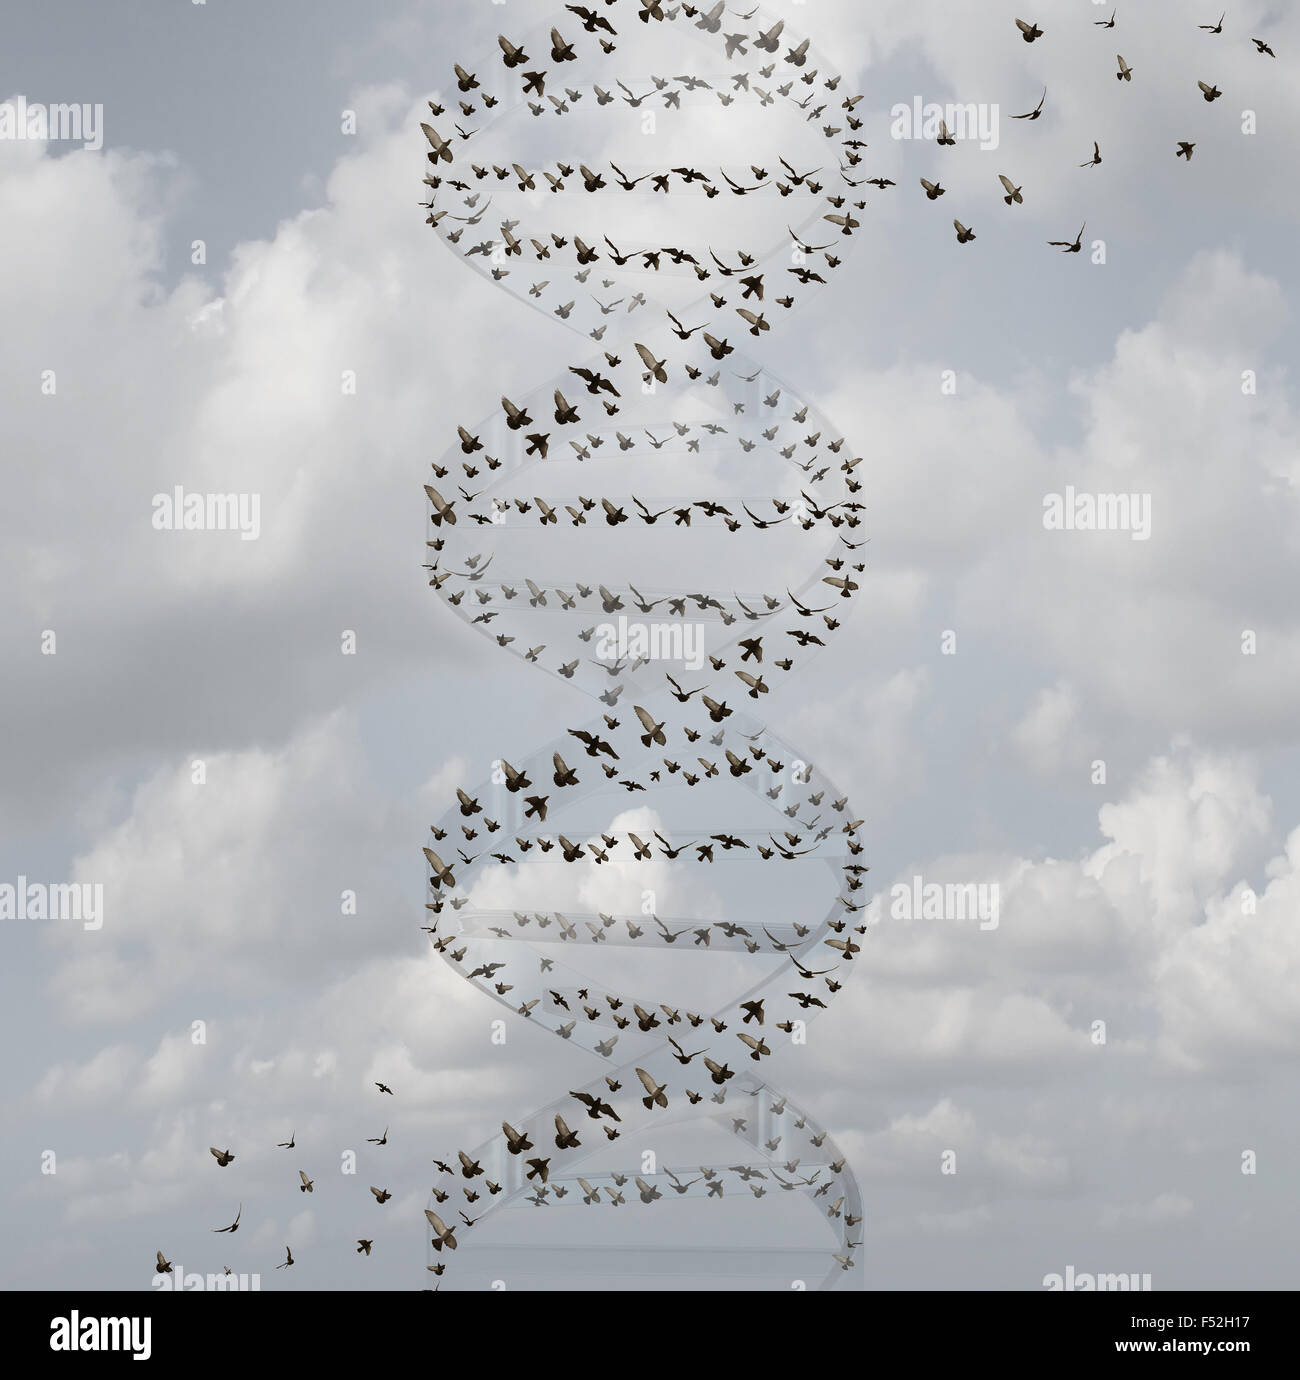 L'ADN dans la nature et de la science médicale en tant que concept recherche un groupe d'oiseaux volant en forme de double hélice comme la biotechnologie et la technologie des soins de santé biologie symbole pour la chimie et la médecine génétique de gènes. Banque D'Images